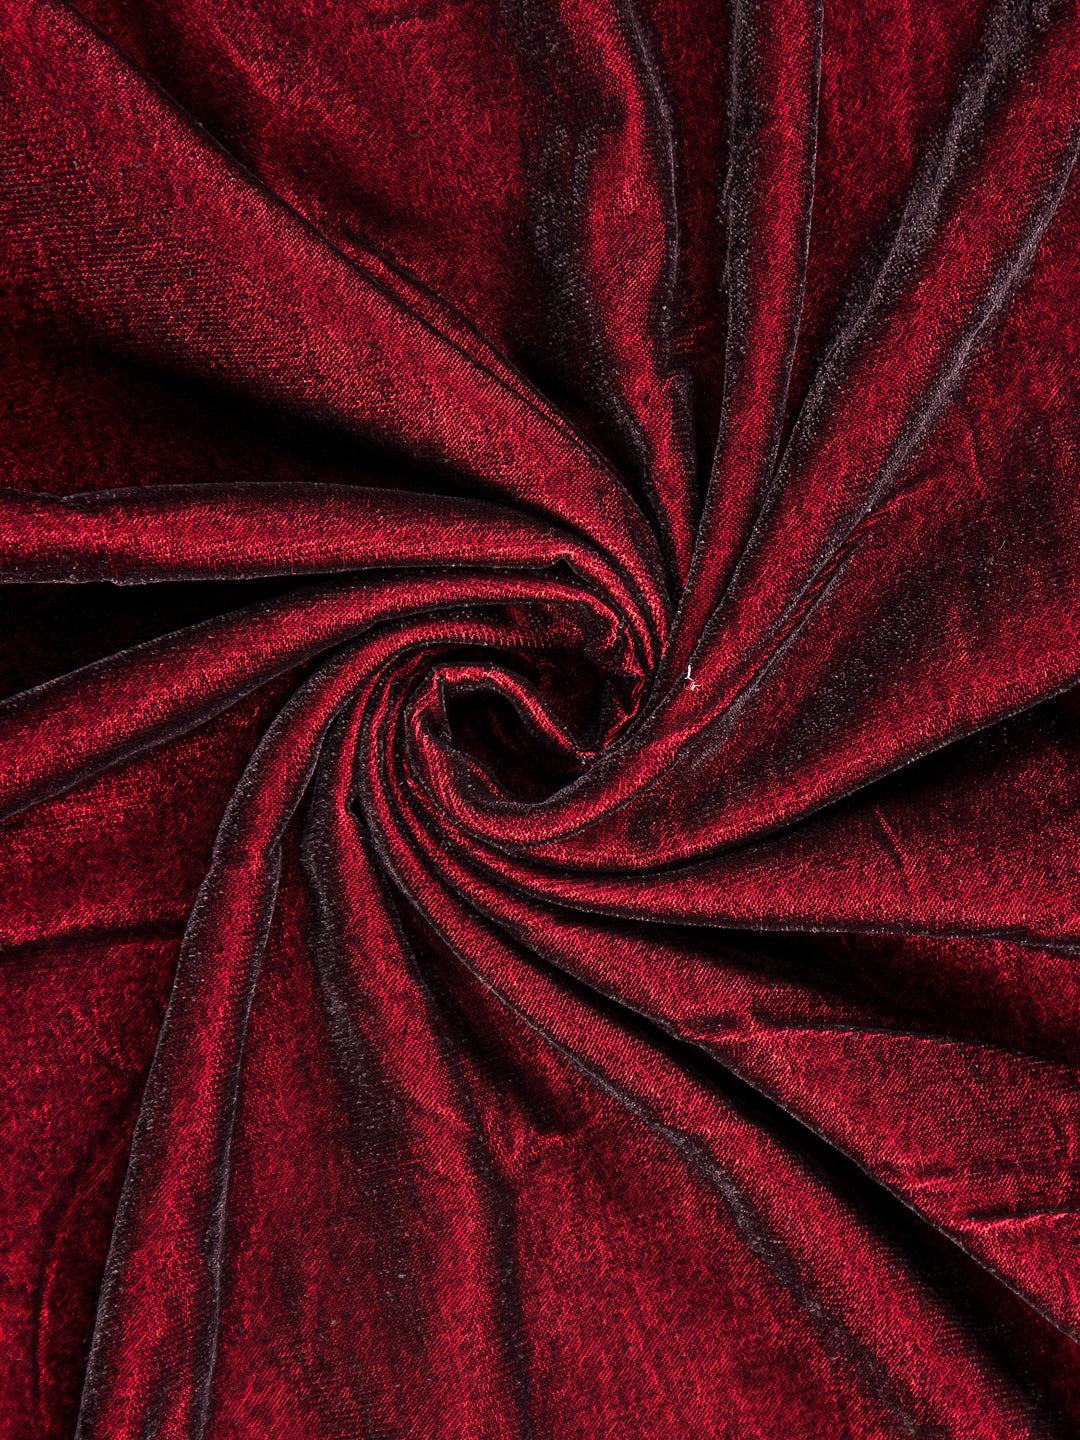 Maroon Velvet Fabric